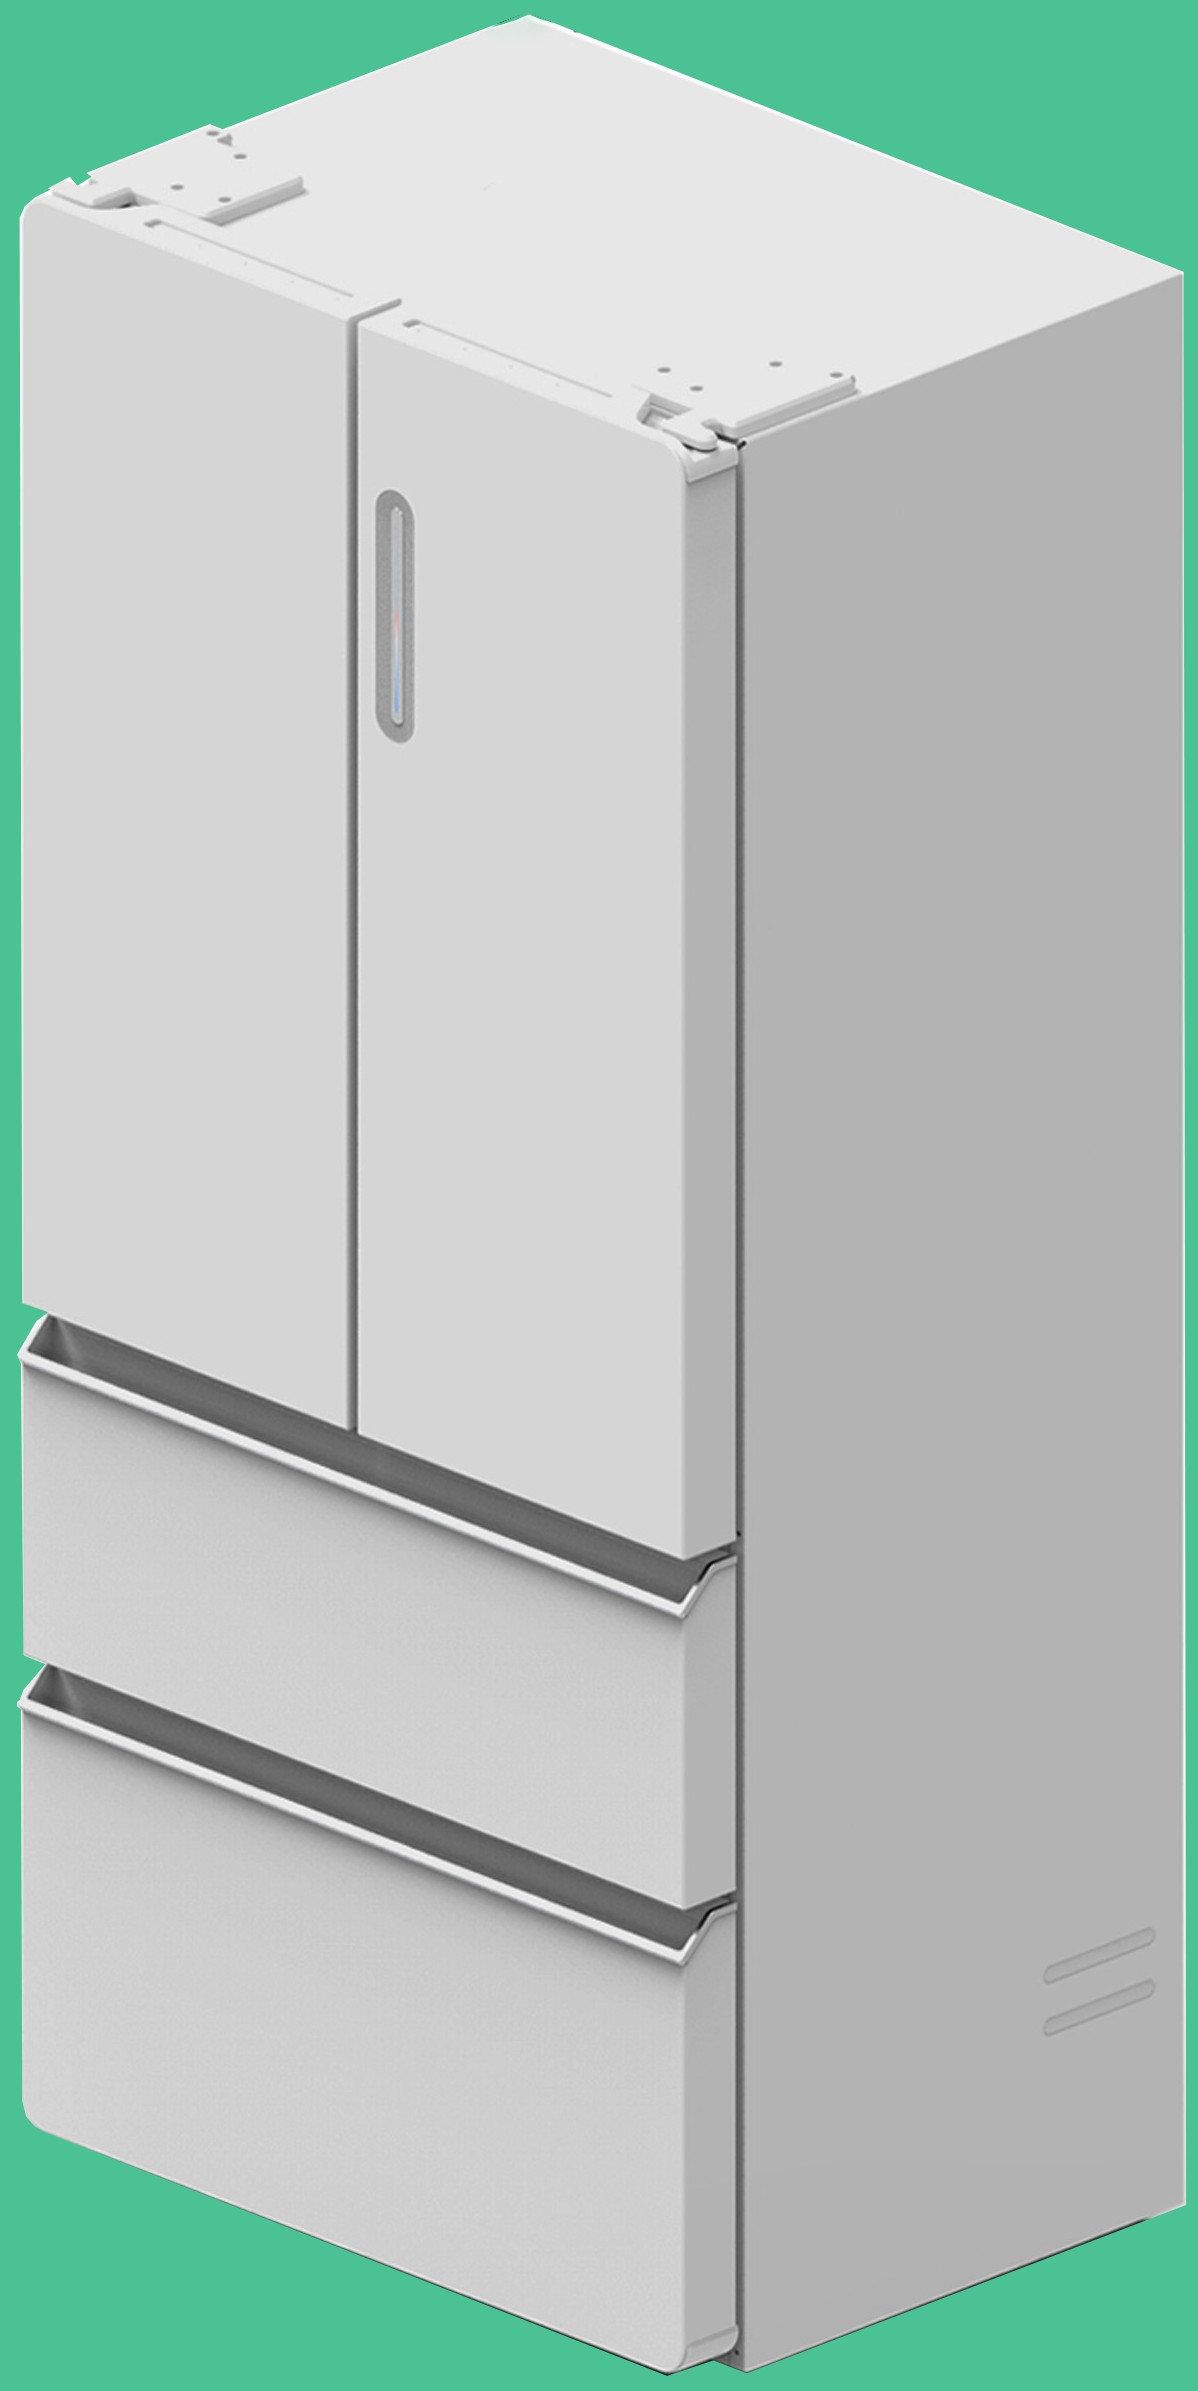 本外观设计产品的名称:冰箱.2.